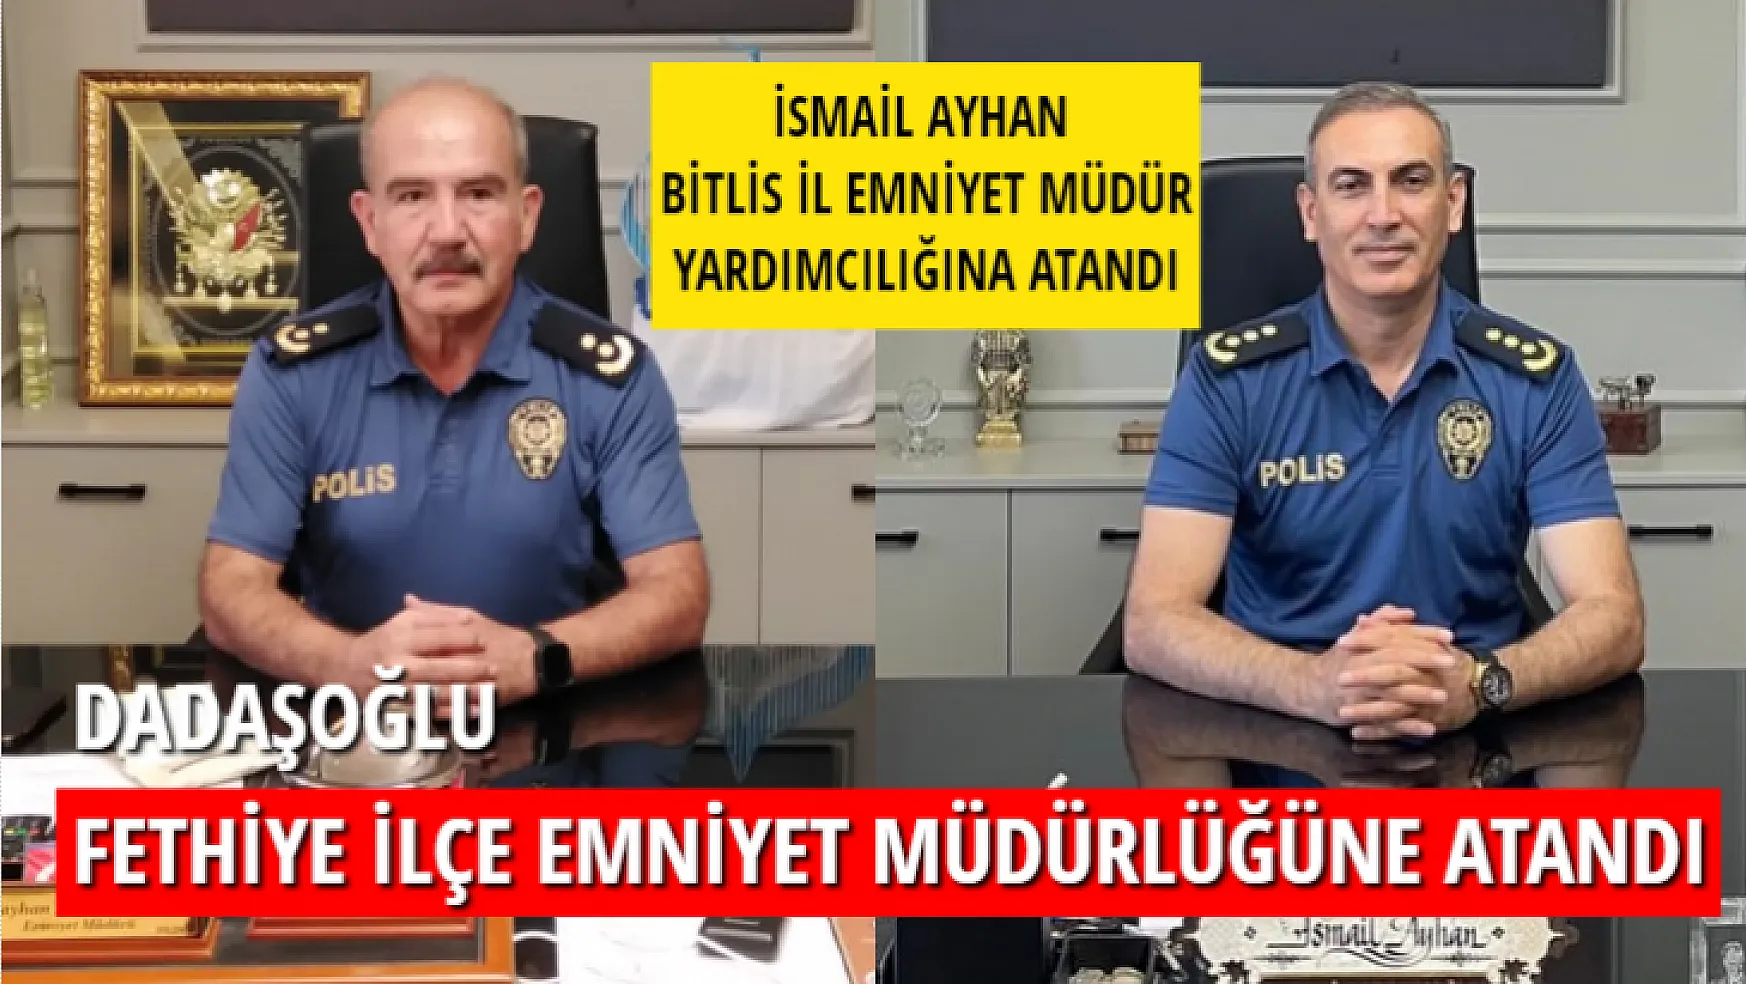 Dadaşoğlu Fethiye İlçe Emniyet Müdürlüğüne Atandı